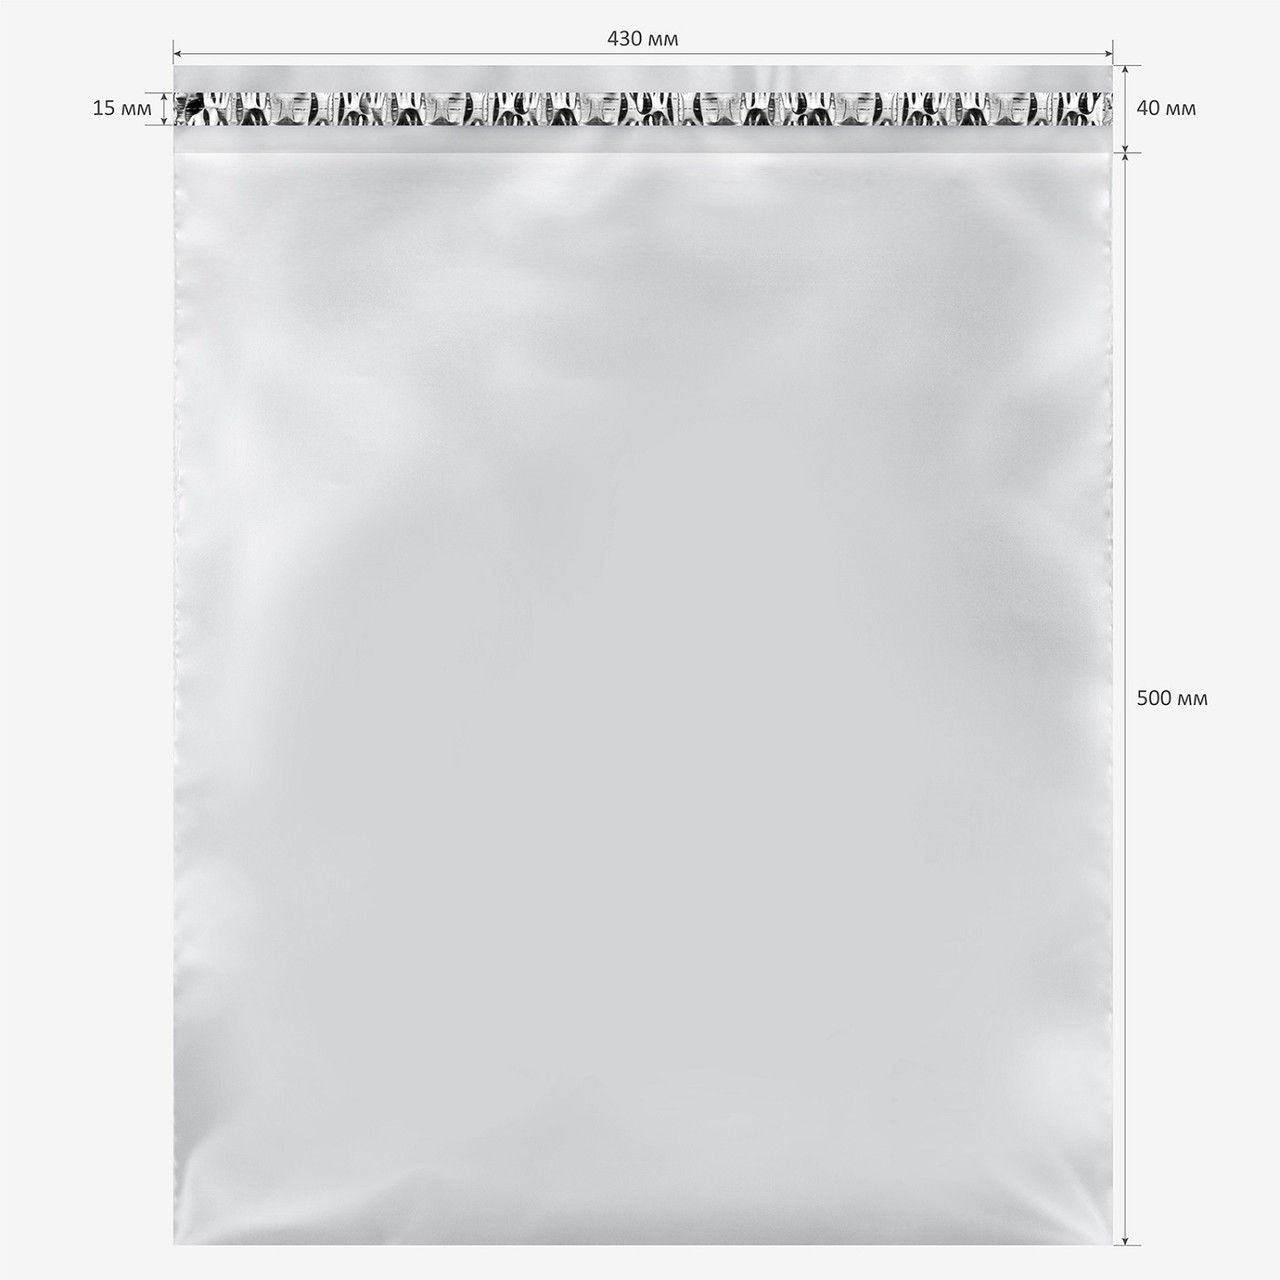 Пакет для маркетплейсов прозрачный (430x500+40)